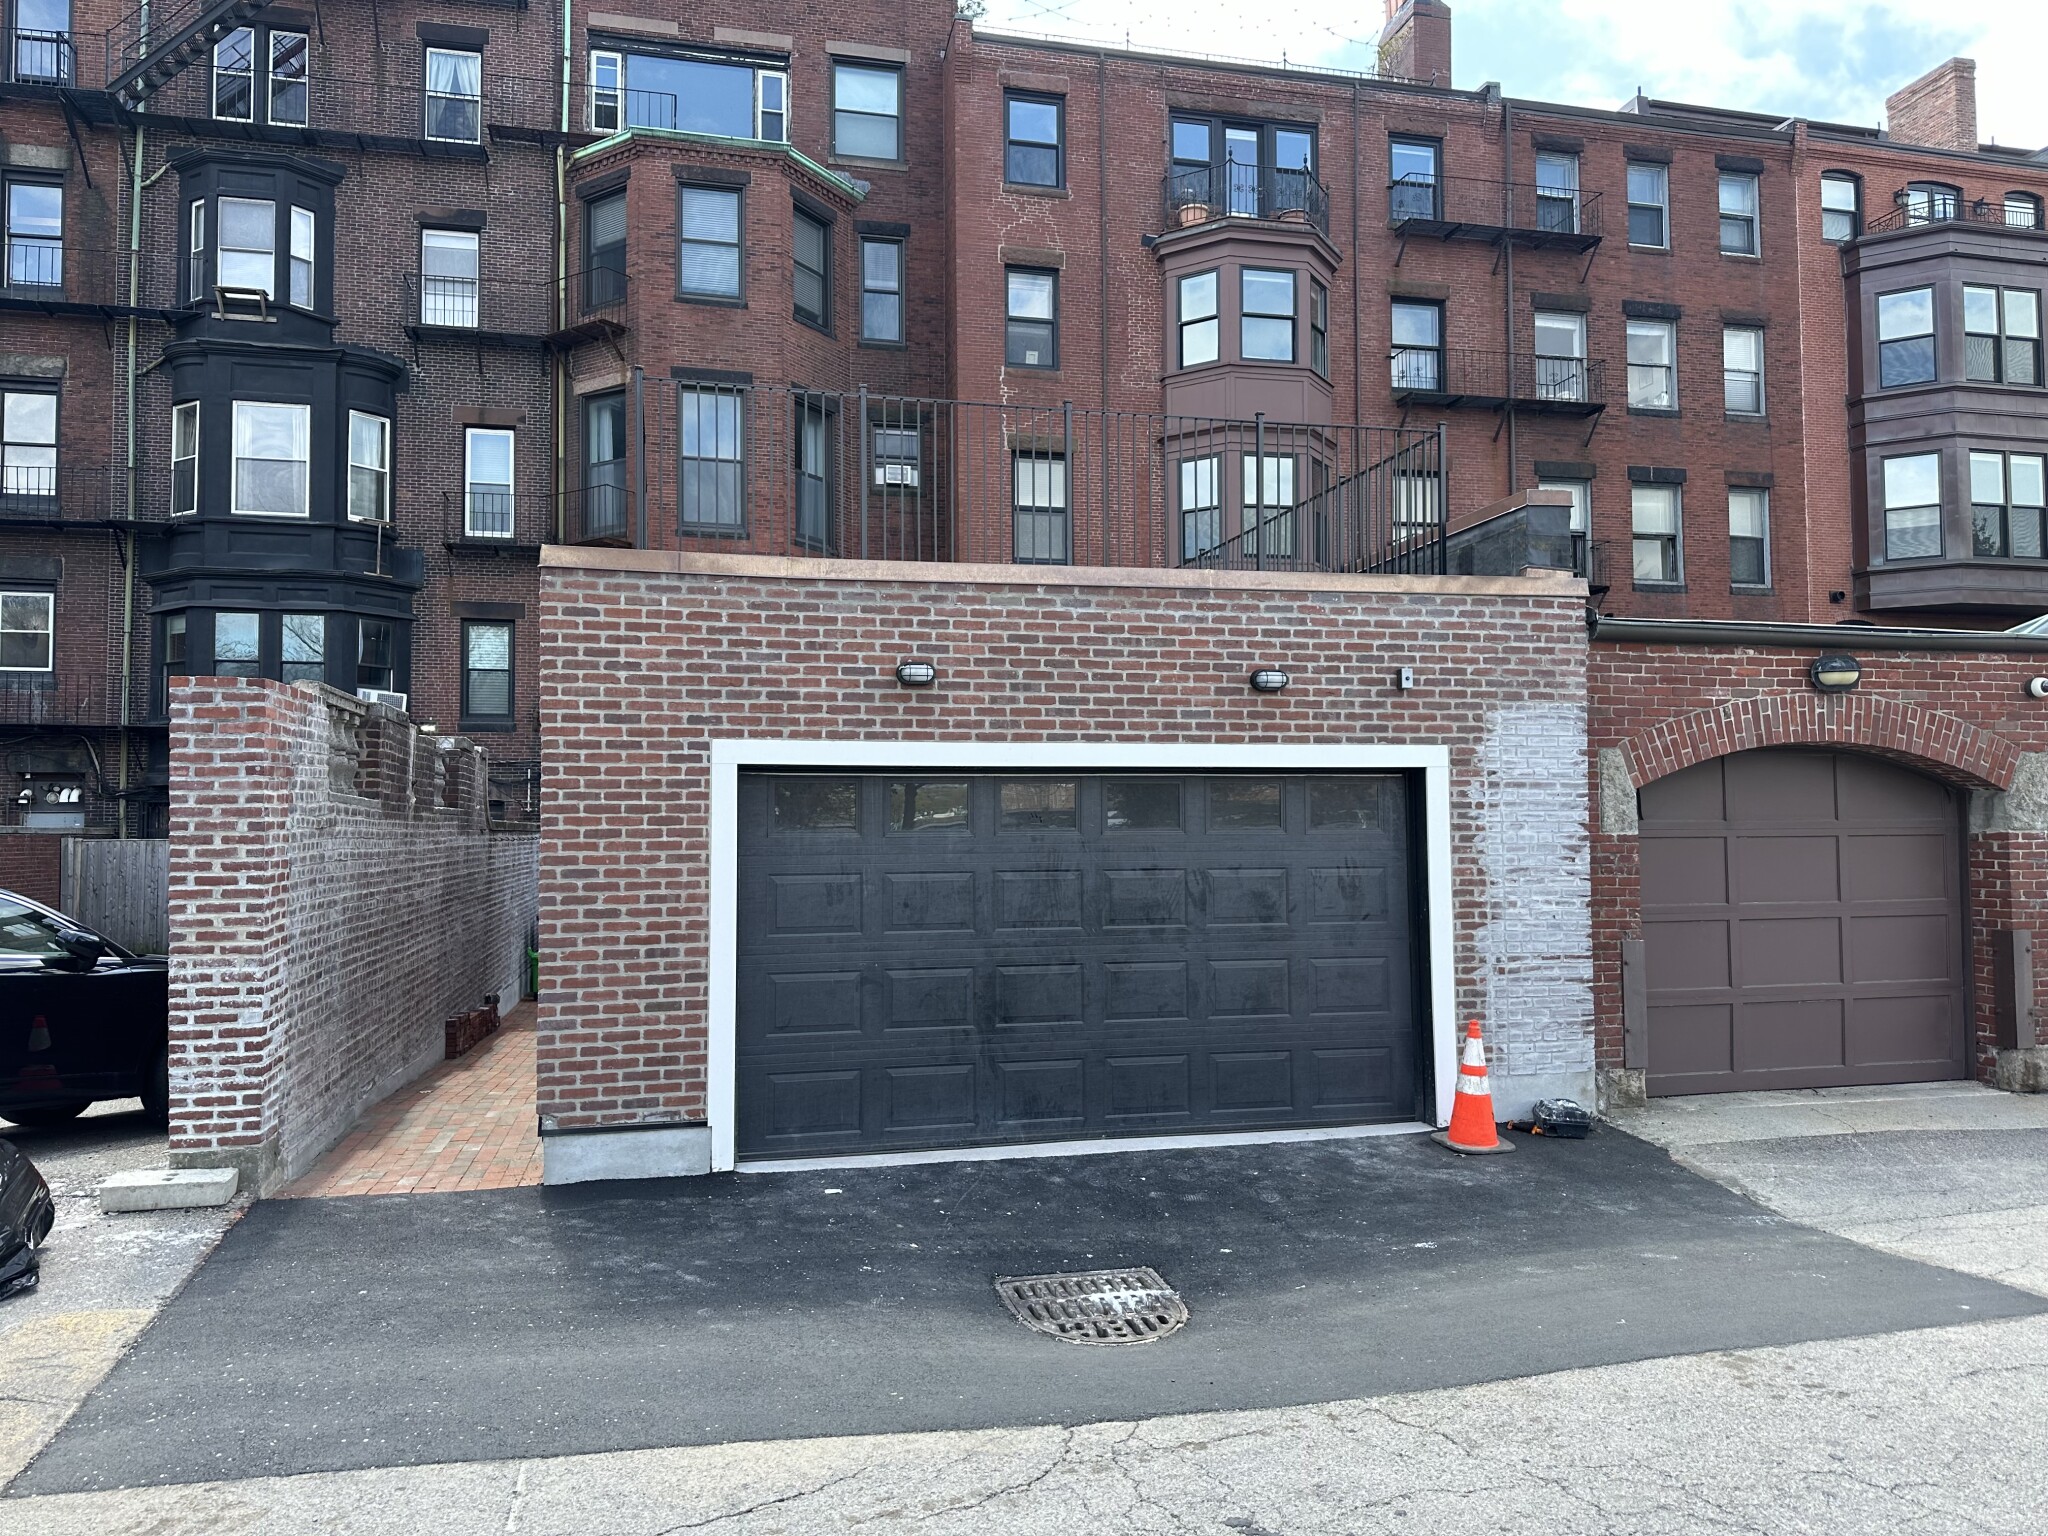 Photos of apartment on Marlborough,Boston MA 02116